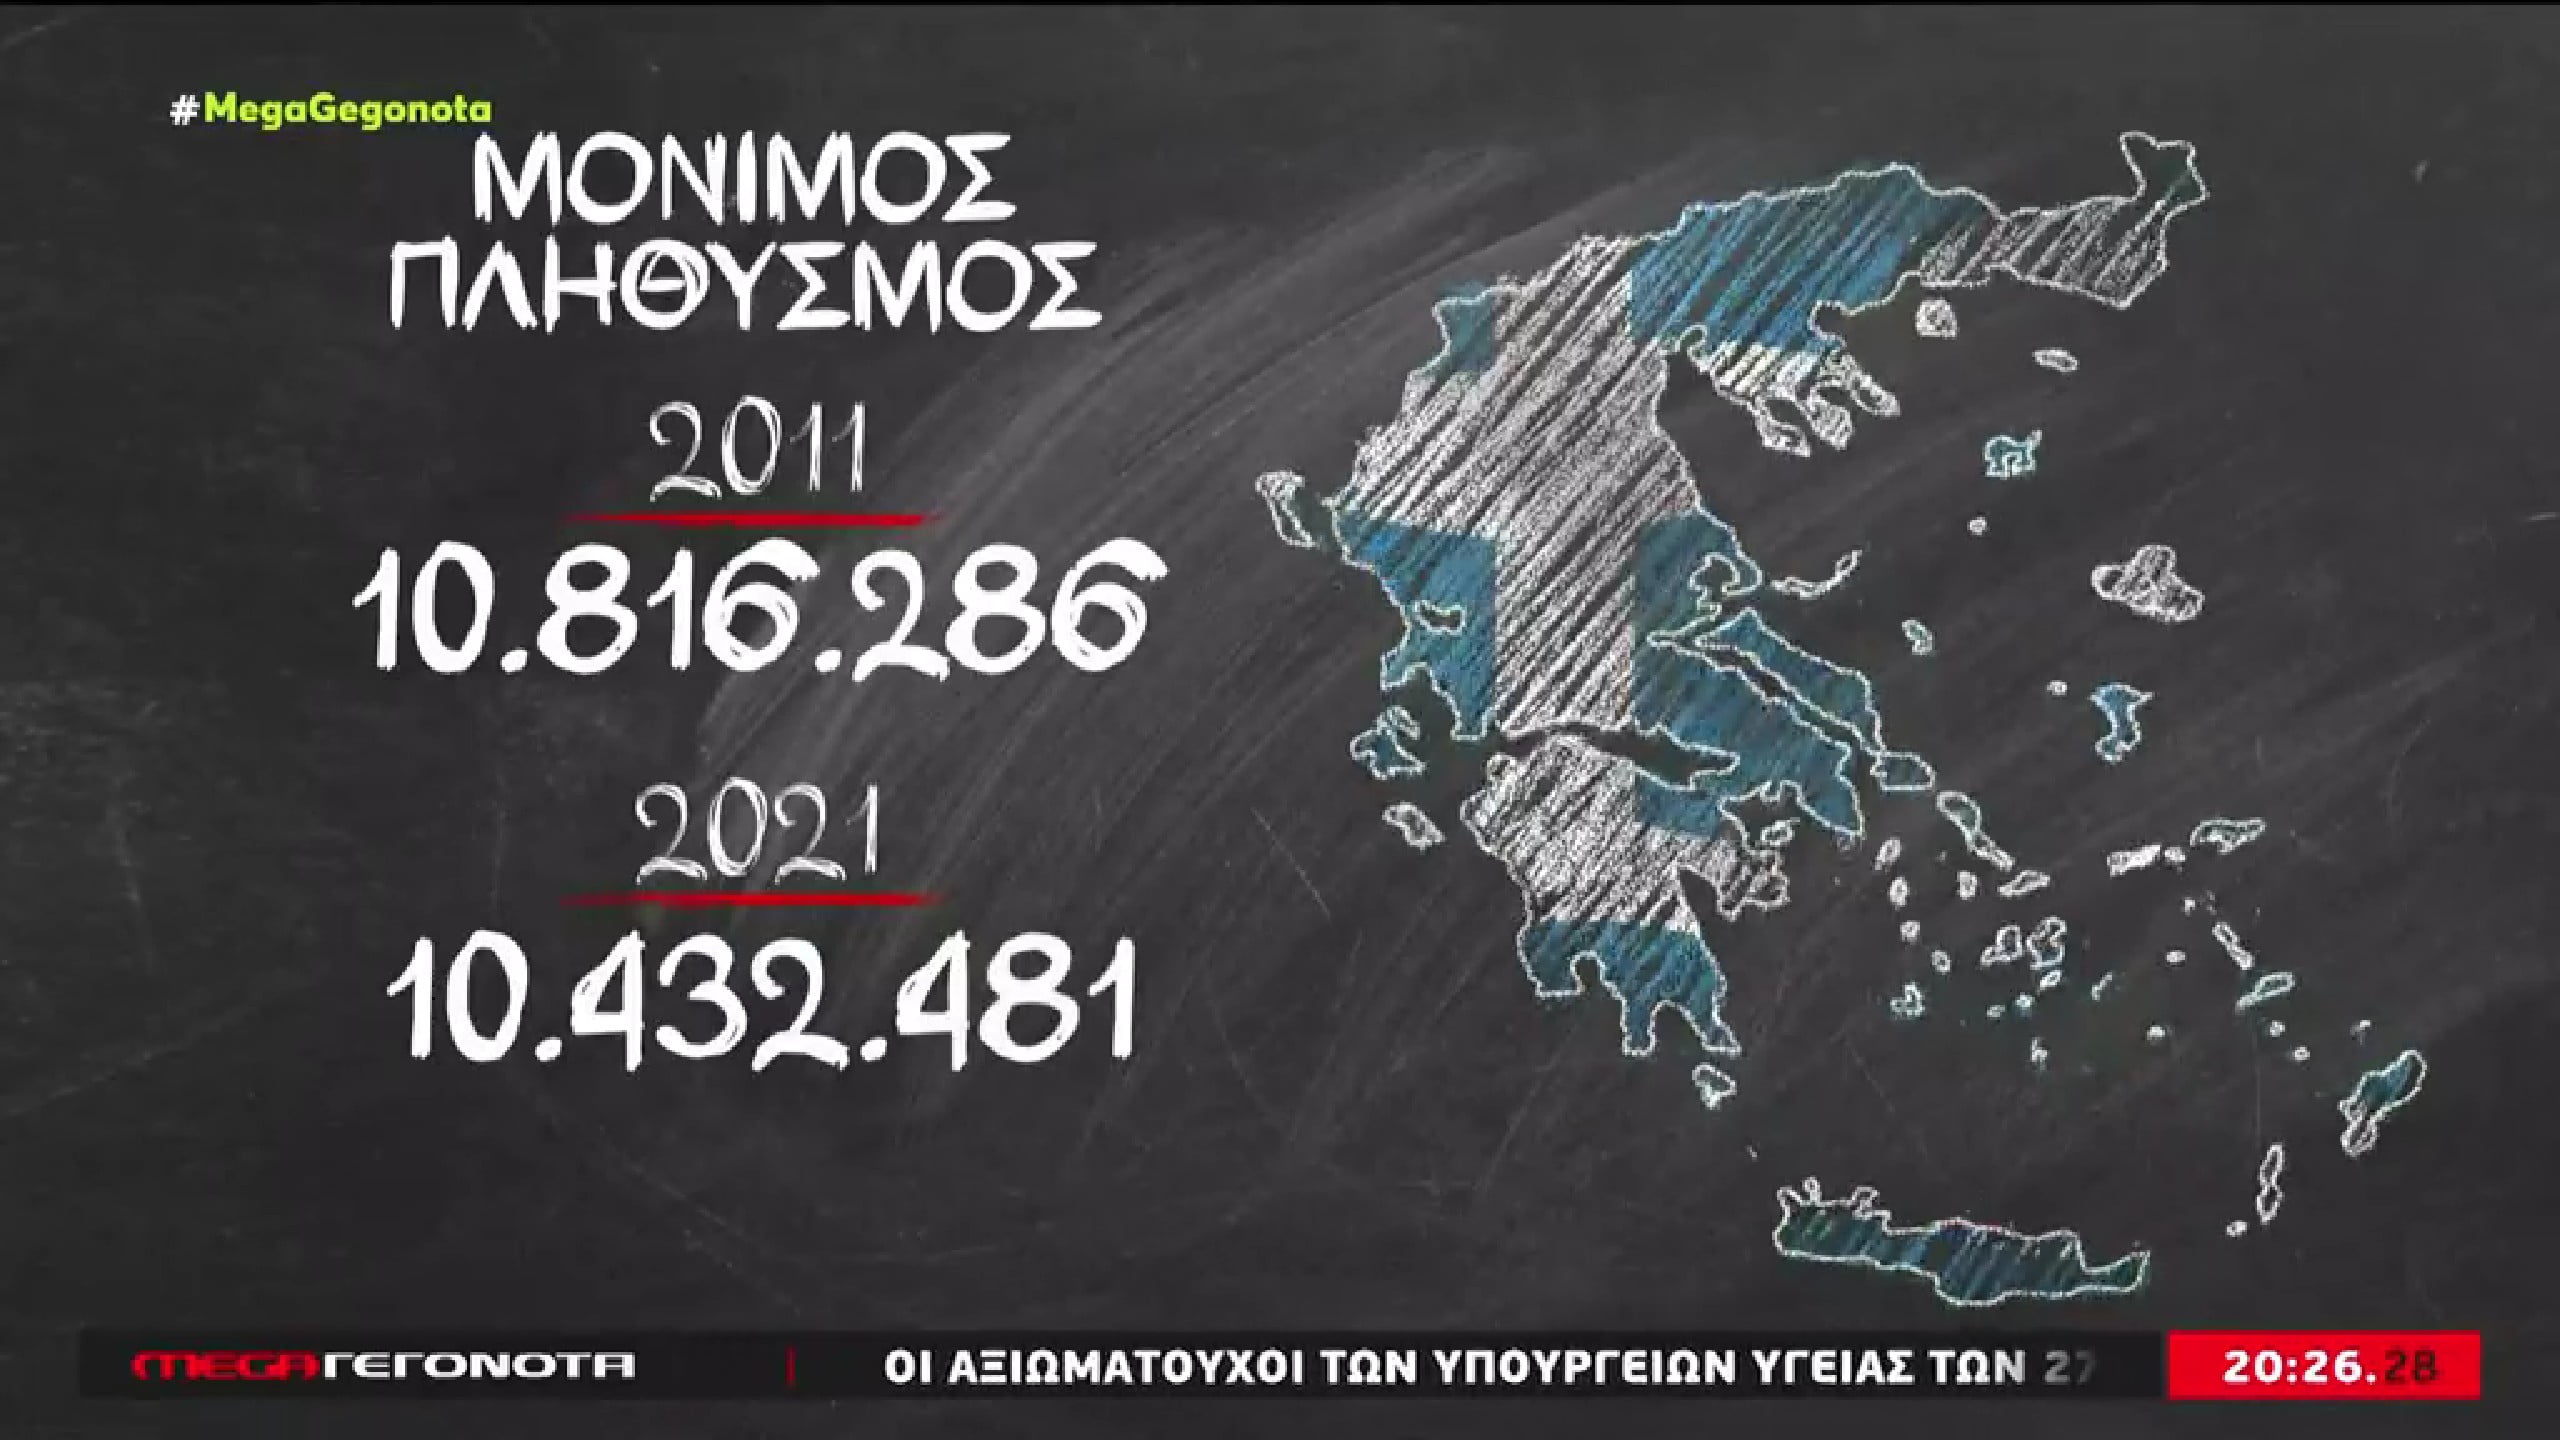 Στοιχεία που προβληματίζουν! Μειωμένος κατά 187.397 άτομα ο νόμιμος πληθυσμός της Ελλάδας